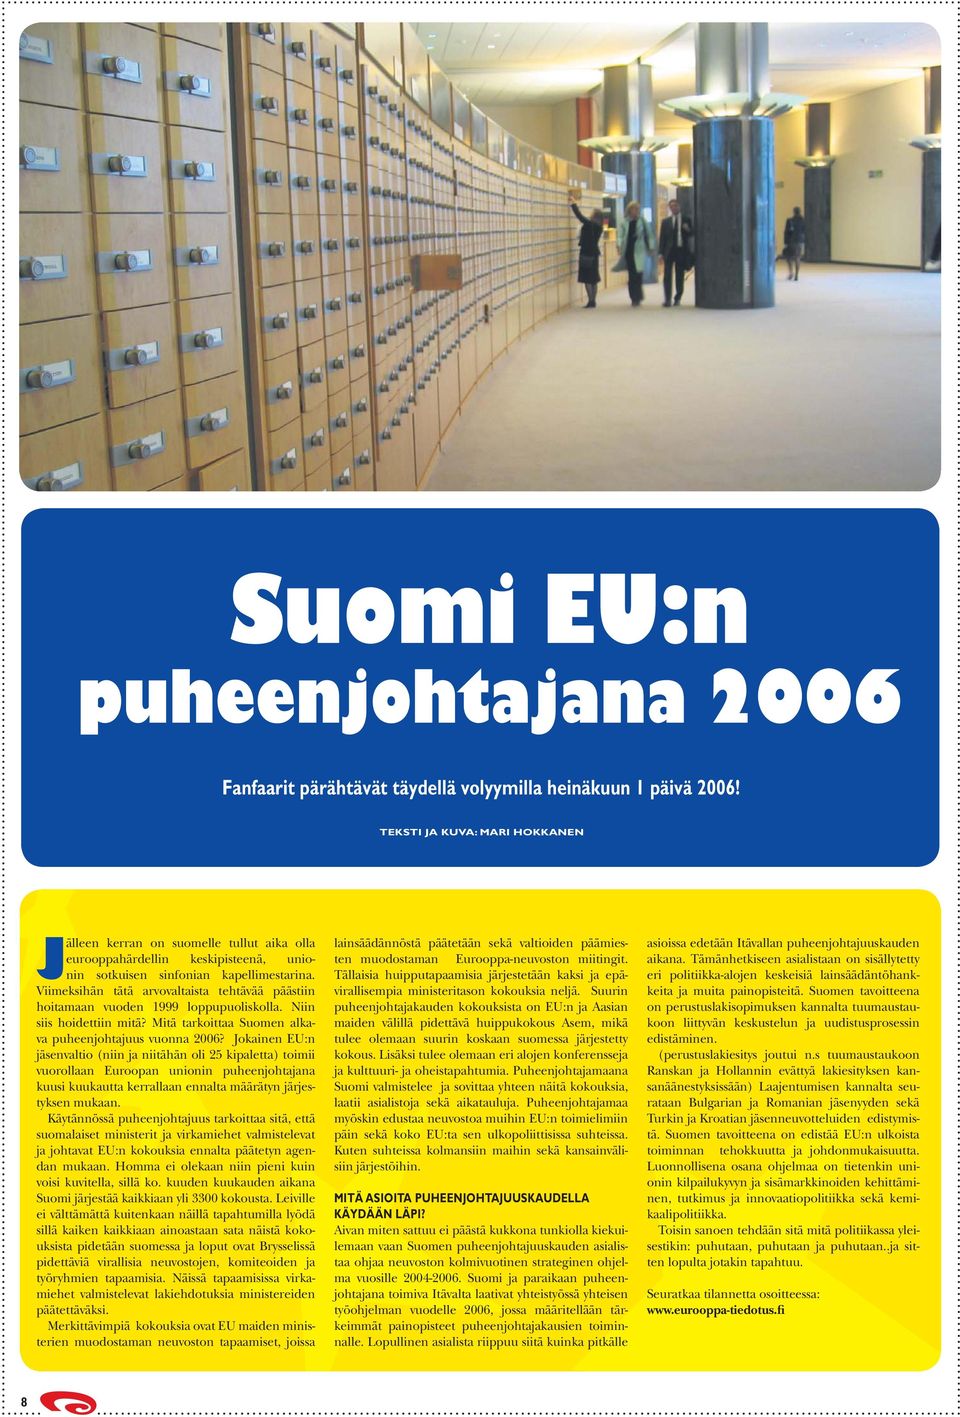 Viimeksihän tätä arvovaltaista tehtävää päästiin hoitamaan vuoden 1999 loppupuoliskolla. Niin siis hoidettiin mitä? Mitä tarkoittaa Suomen alkava puheenjohtajuus vuonna 2006?